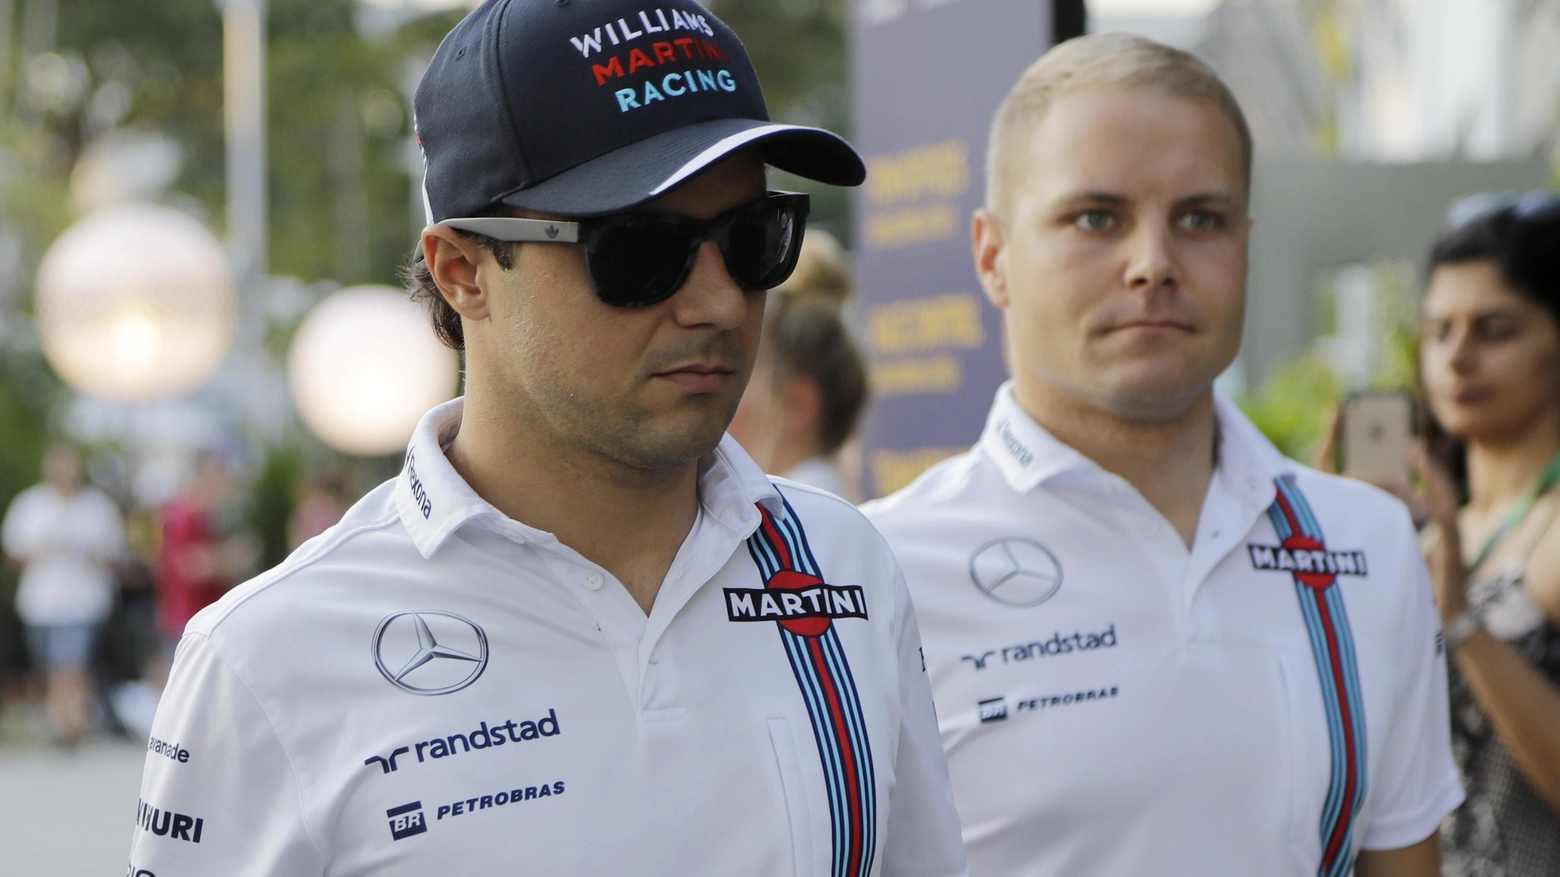 Felipe Massa e Valtteri Bottas, protagonisti del mercato F1 (AP)